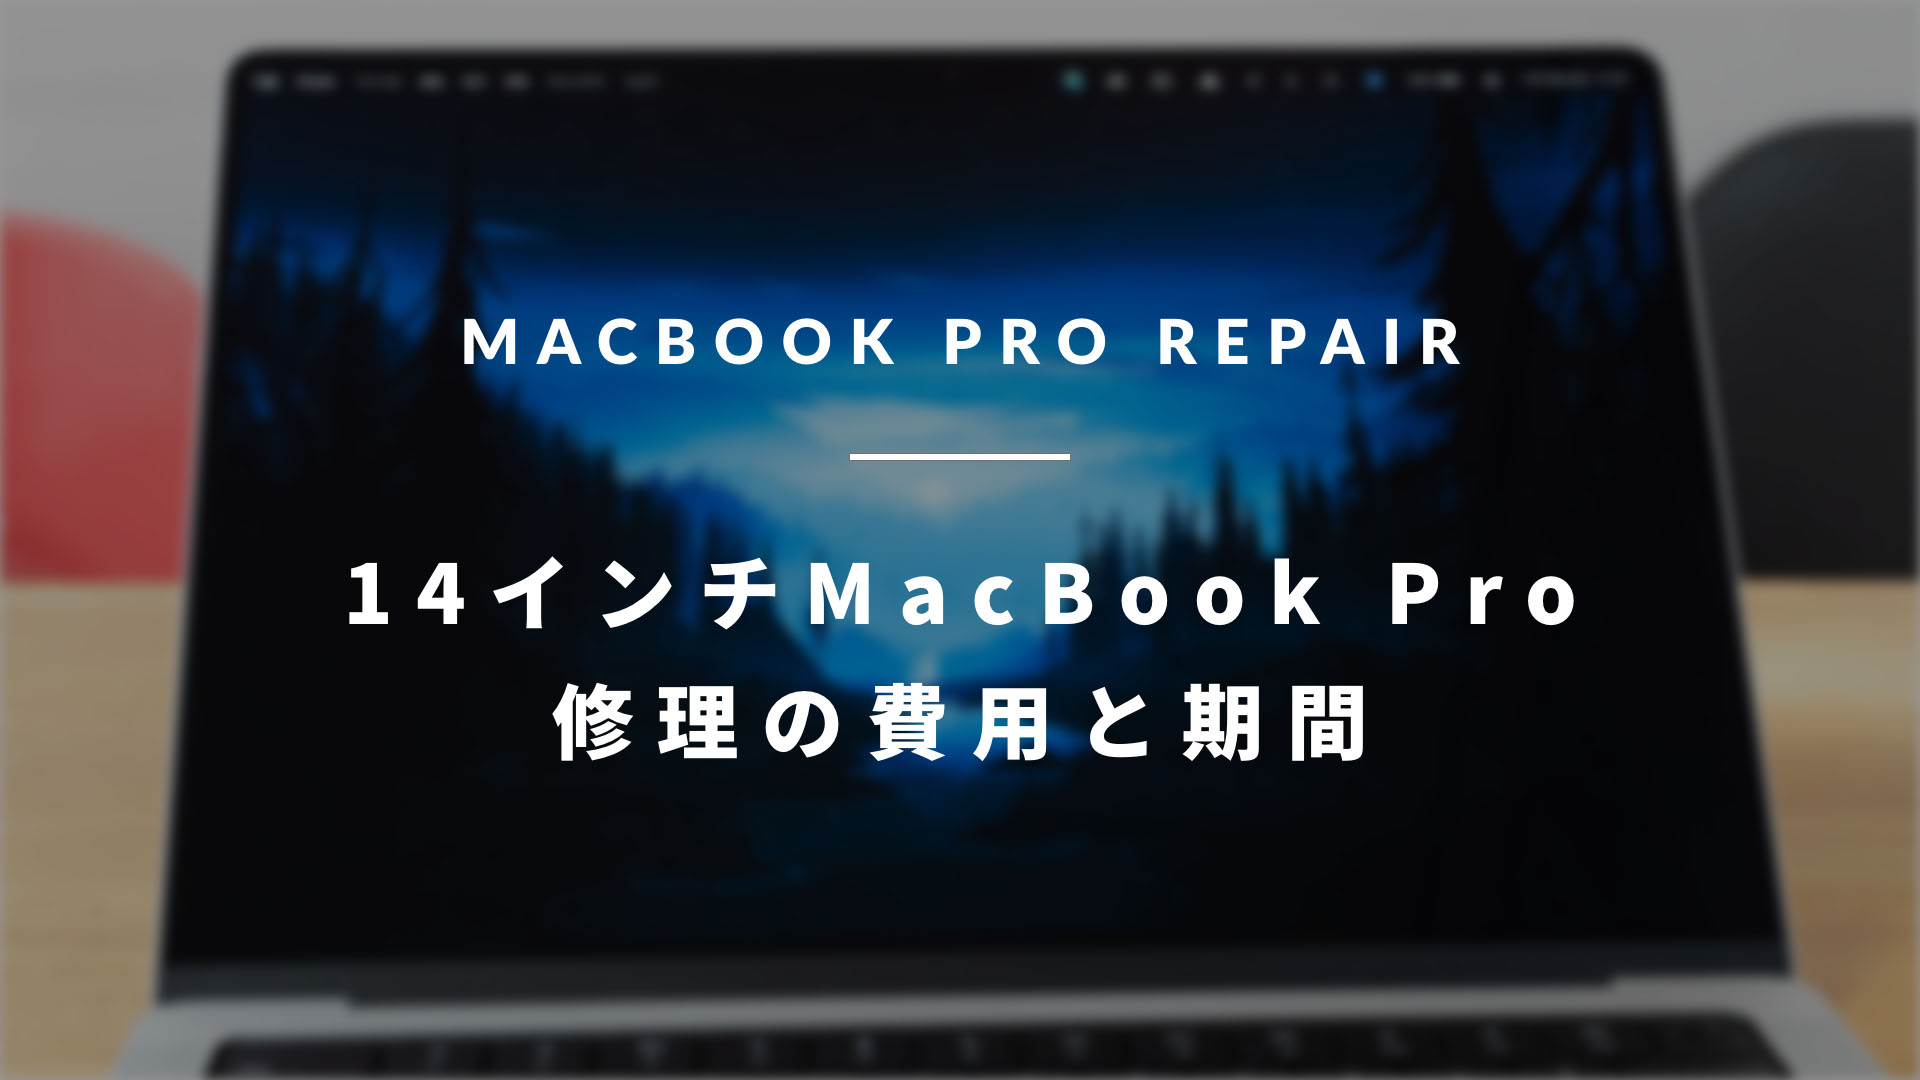 MacBook Pro 2021 (14インチ M1 Pro) を修理したので、かかった費用と 